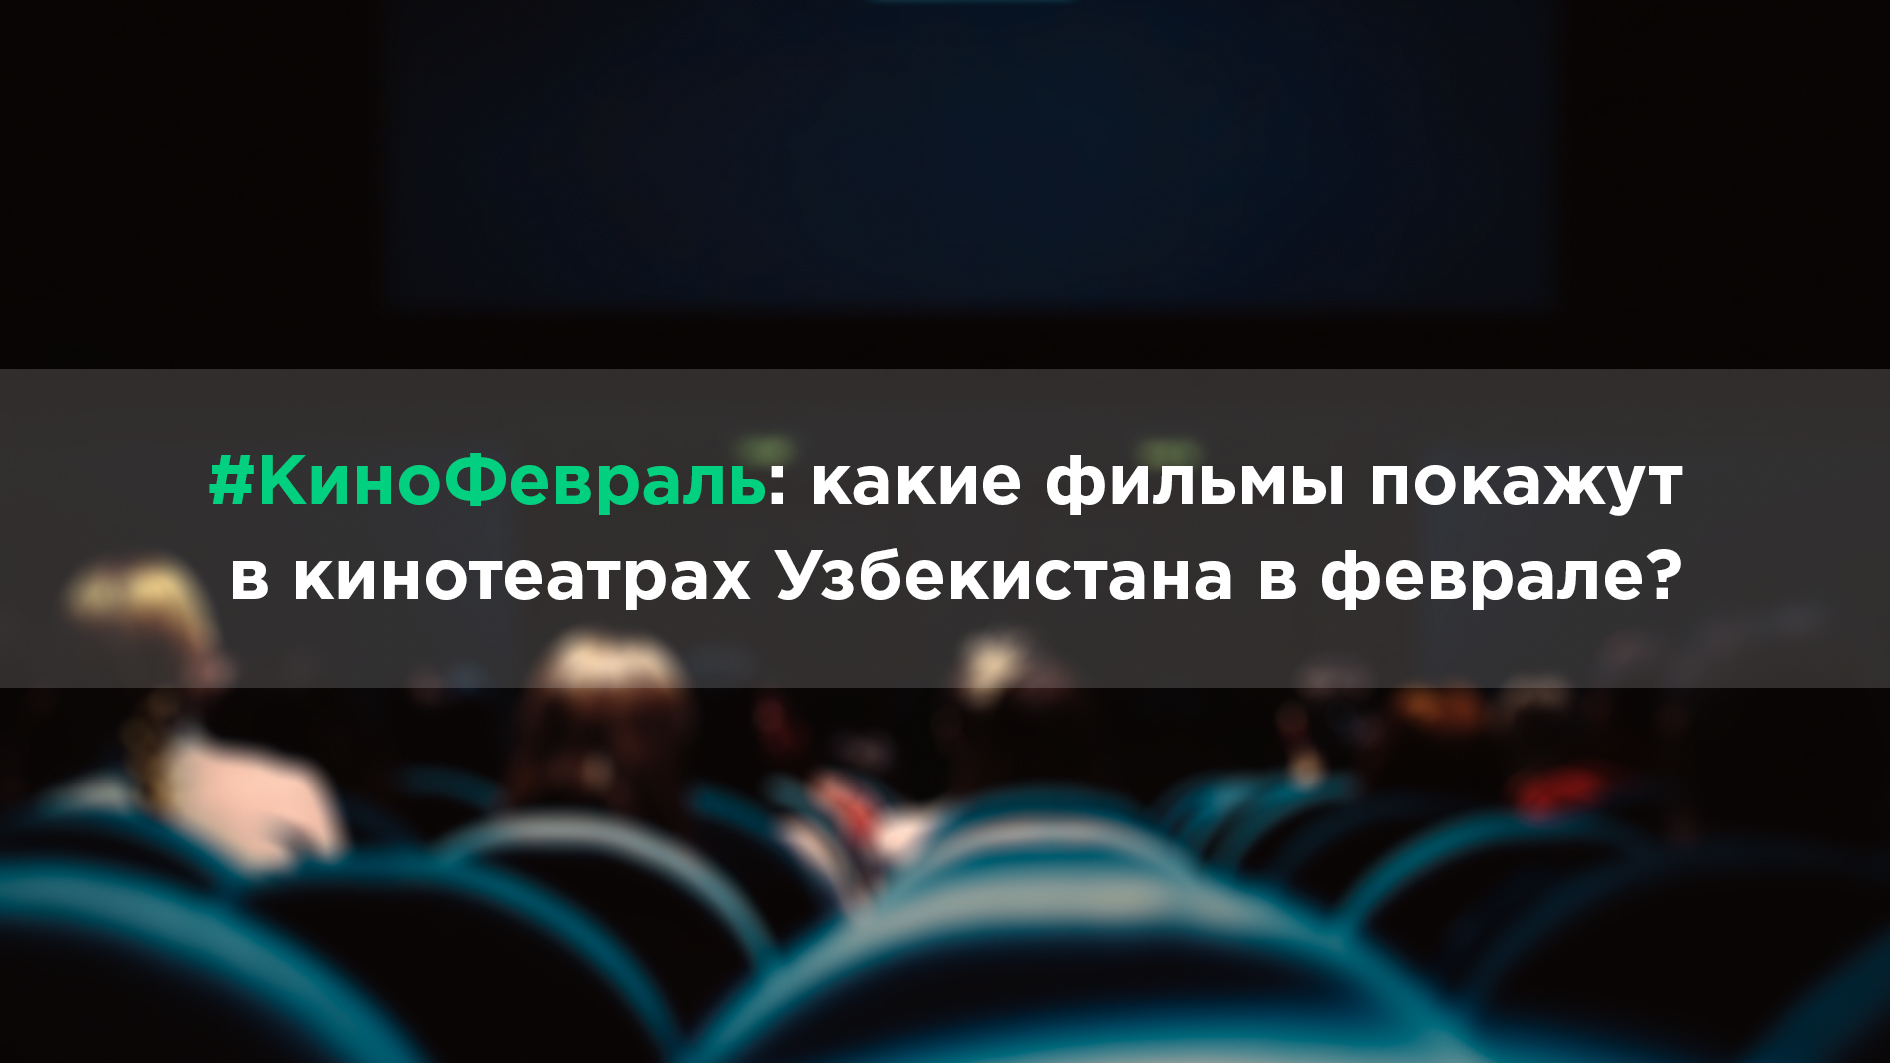 Что покажут в кинотеатрах Узбекистана в феврале 